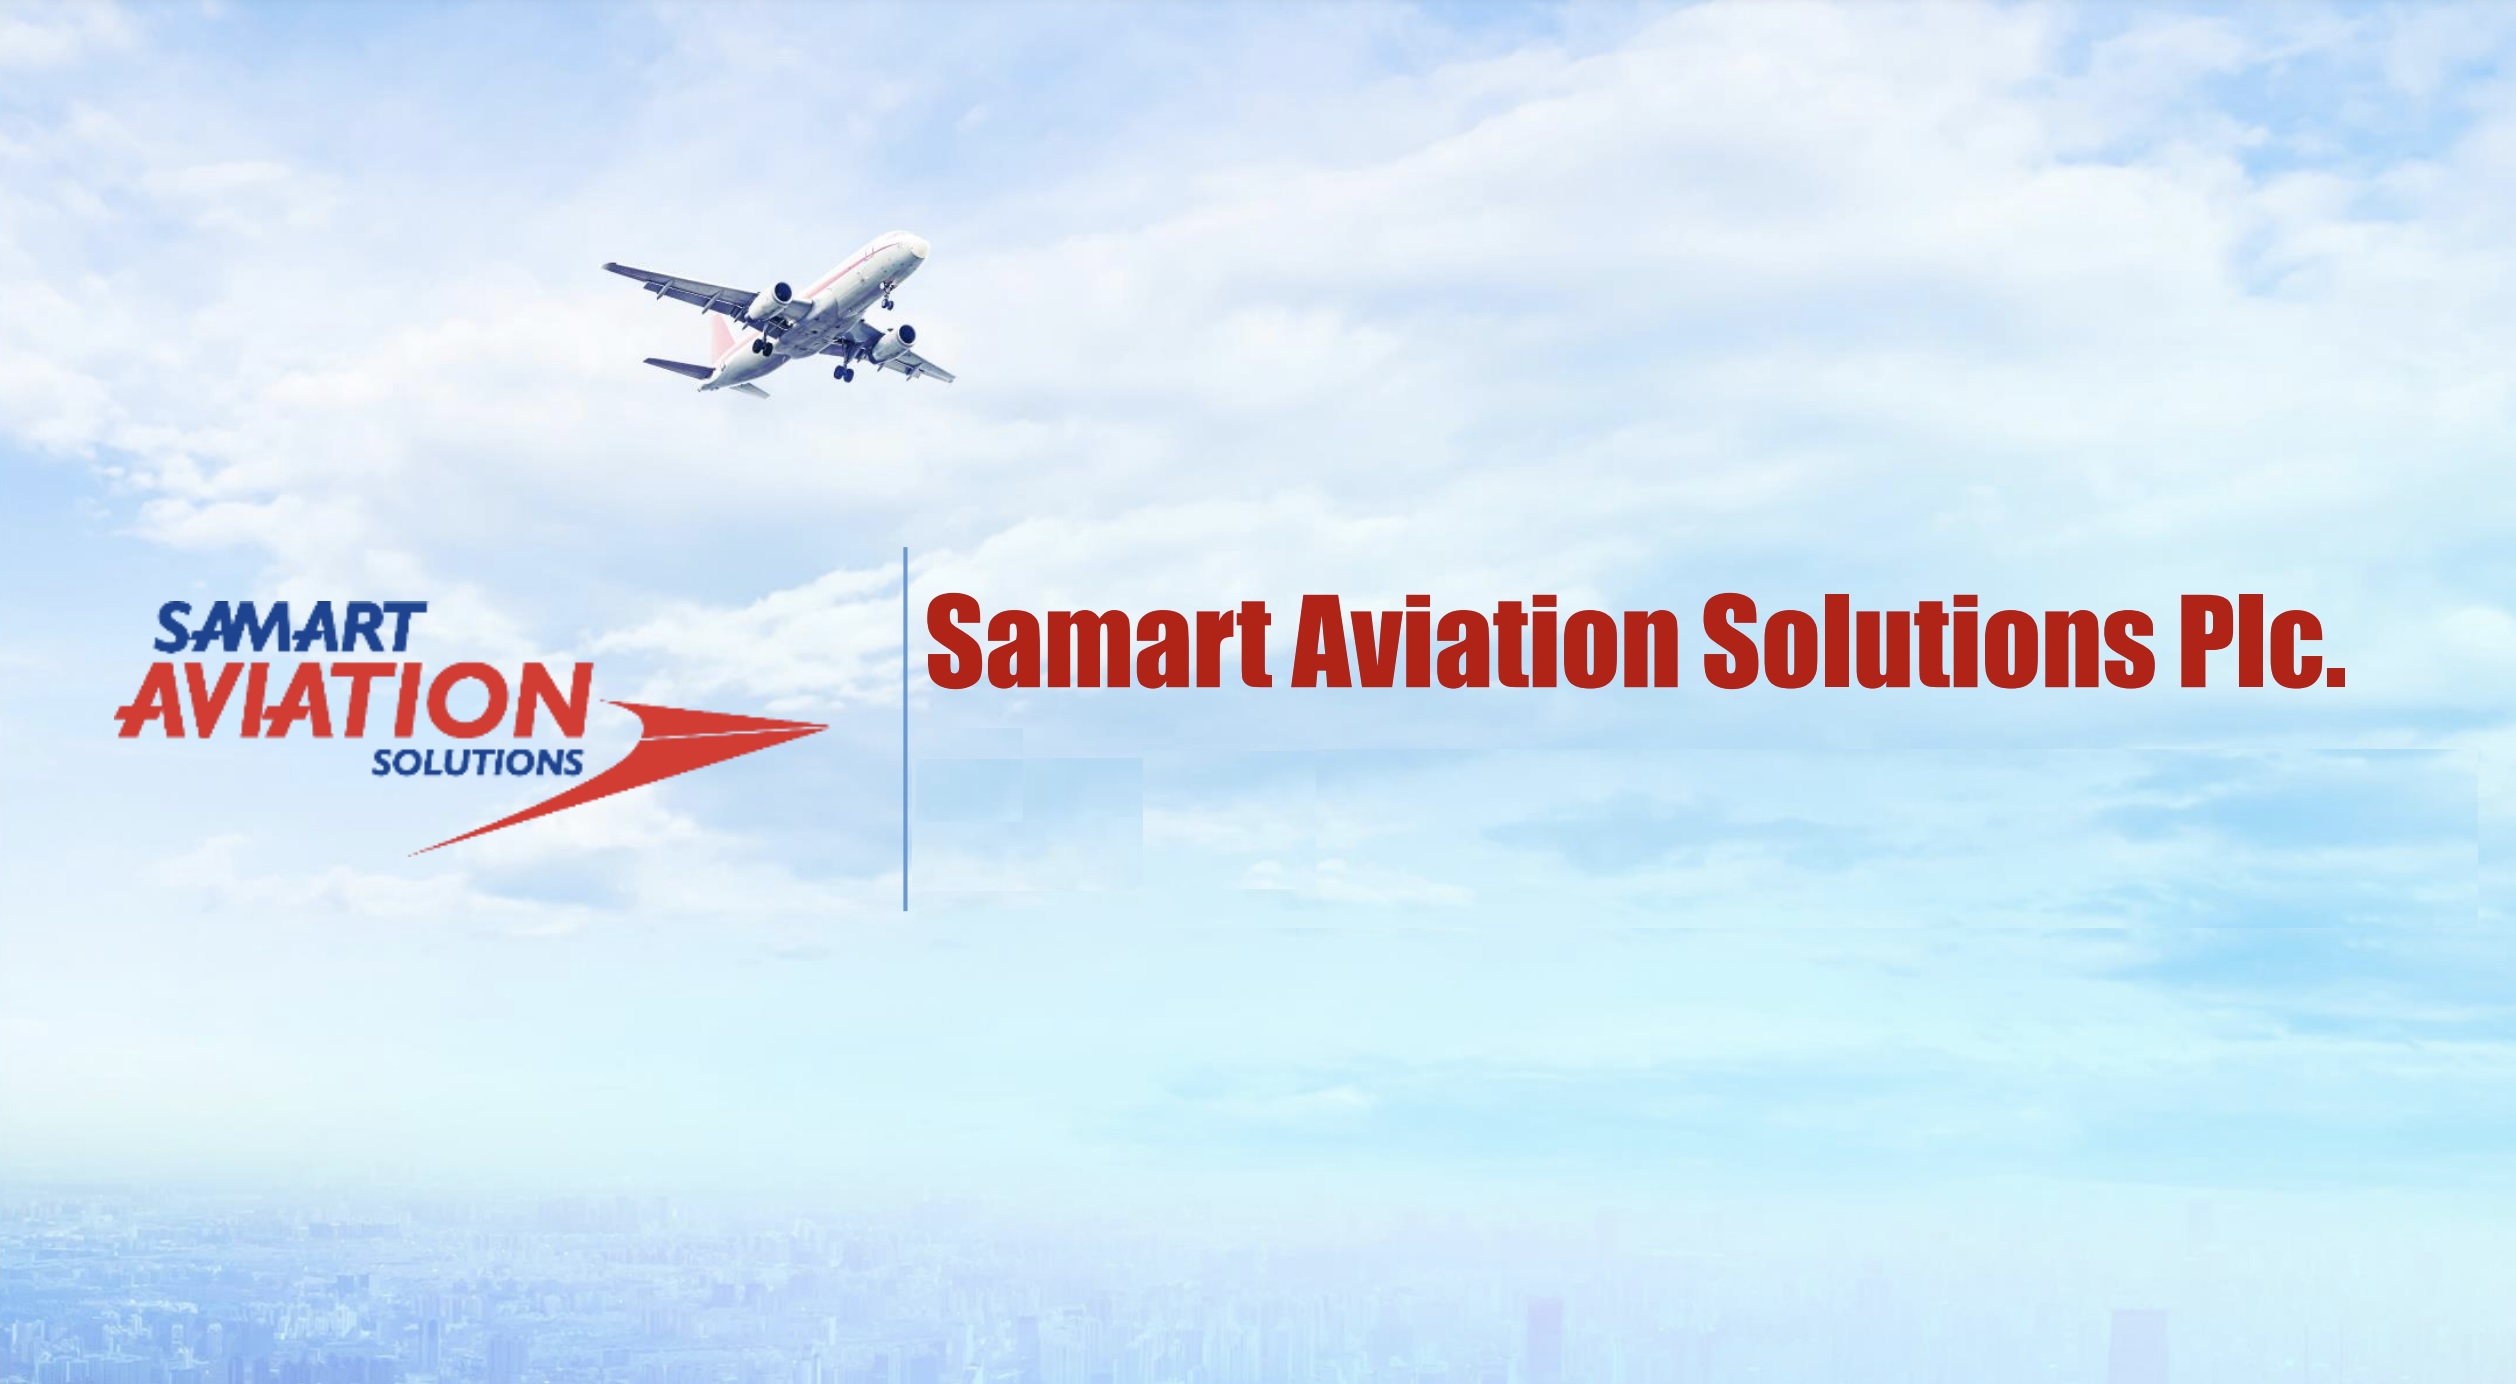 กลุ่ม SAMART รับโชค 2 ชั้น ดัน SAV หุ้นวิทยุการบินหนึ่งเดียวเข้าตลาดหุ้น ลุ้นปีหน้าโตกว่าก่อนโควิด